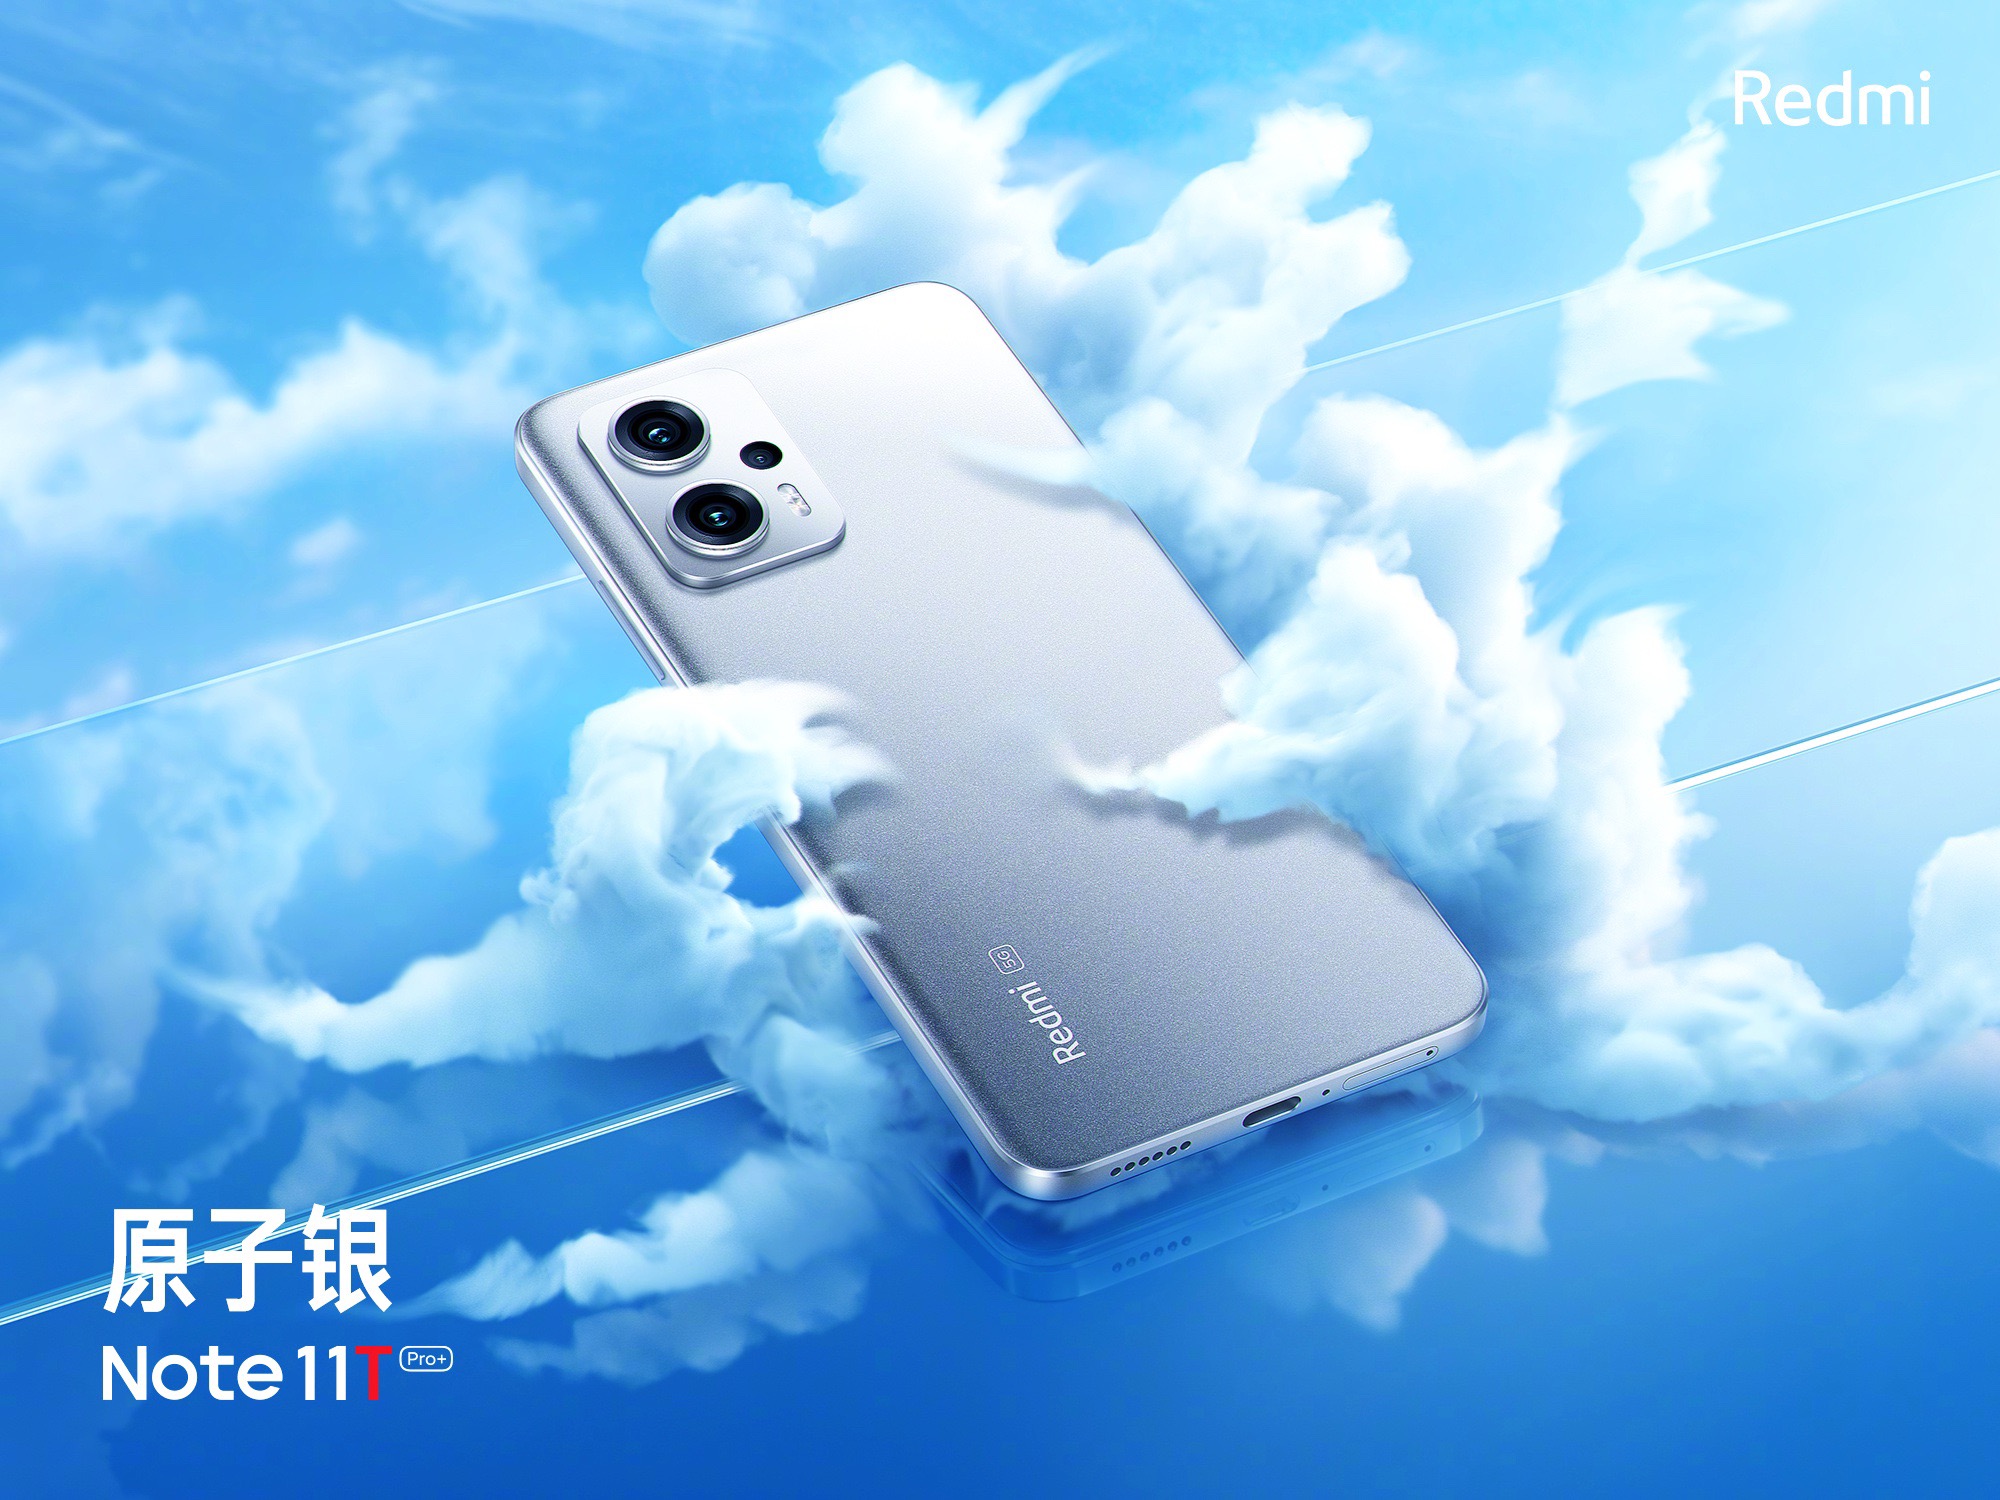 Nowy Xiaomi stał się najlepszym smartfonem pod względem ceny i wydajności w AnTuTu